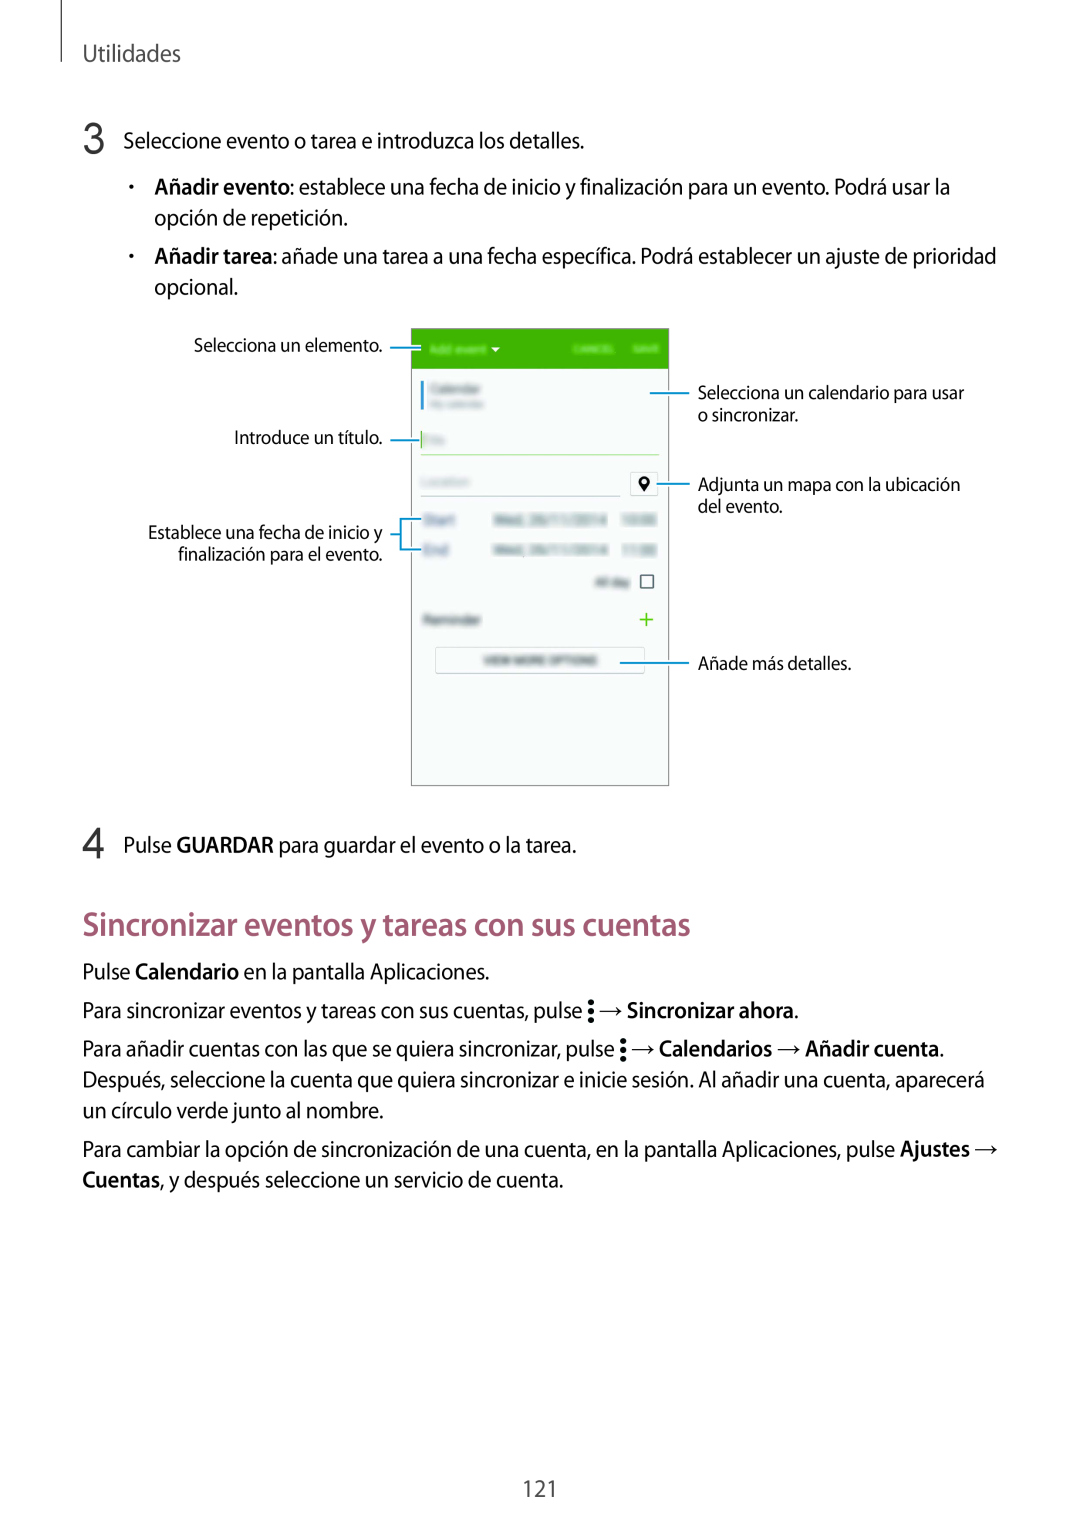 Samsung SM-G900FZKAEUR, SM-G900FZKADBT Sincronizar eventos y tareas con sus cuentas, Utilidades, Selecciona un elemento 